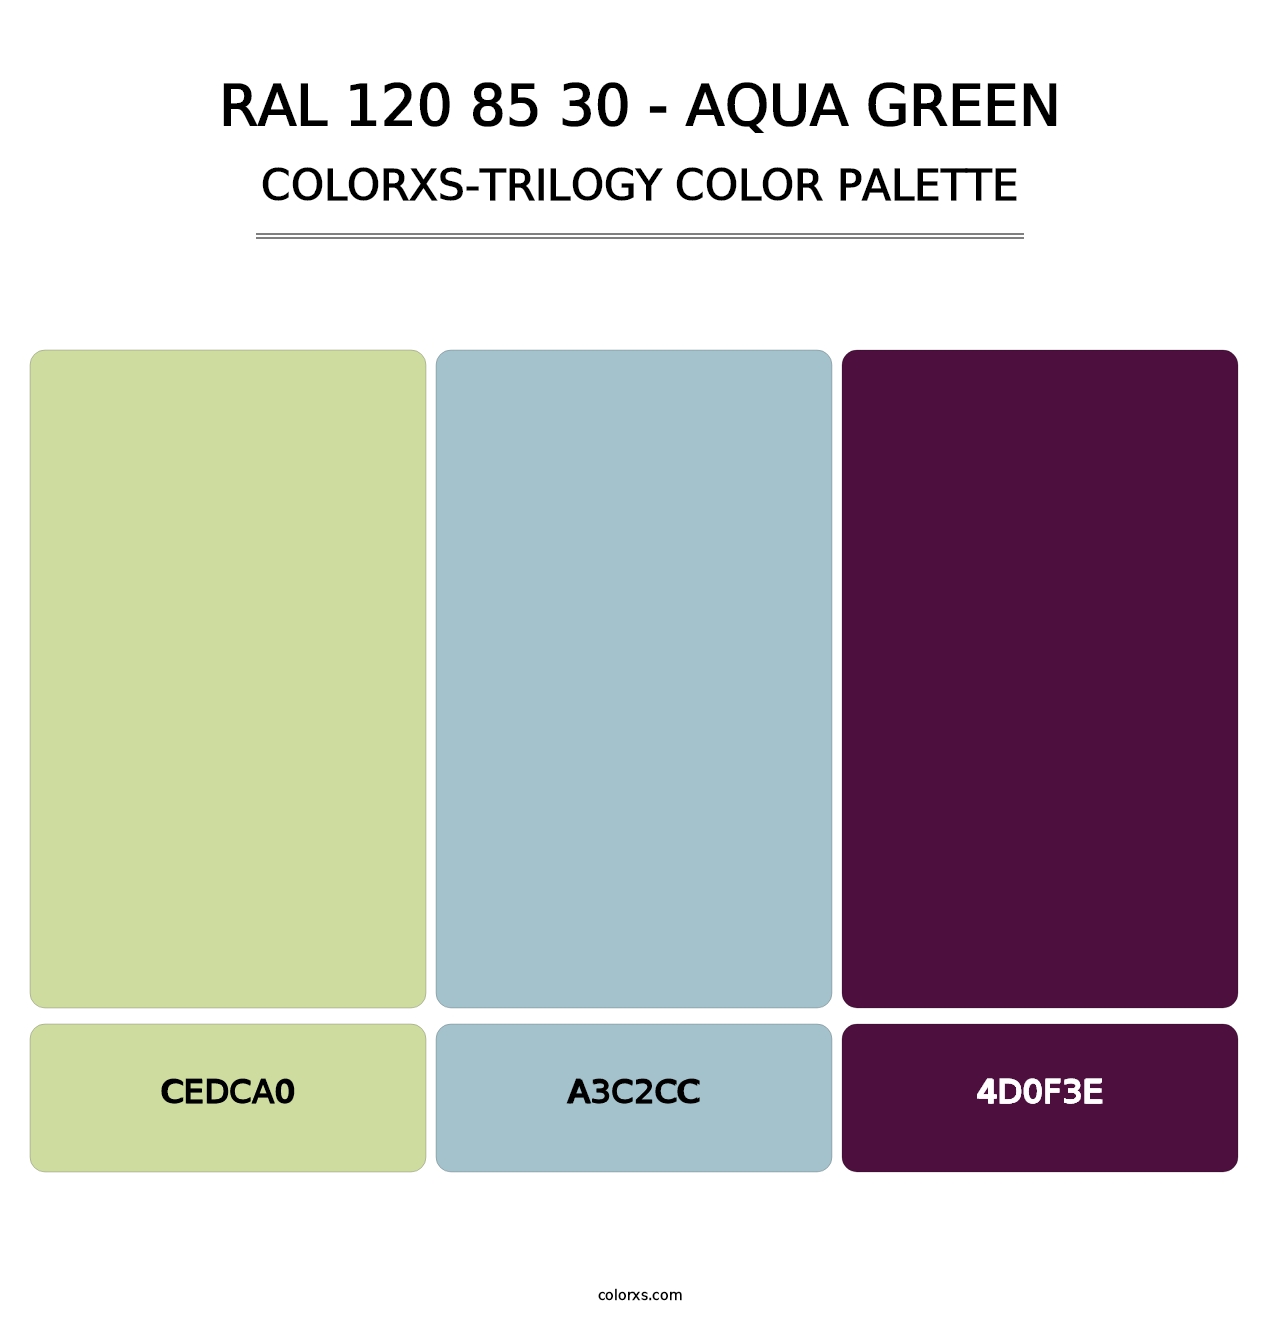 RAL 120 85 30 - Aqua Green - Colorxs Trilogy Palette